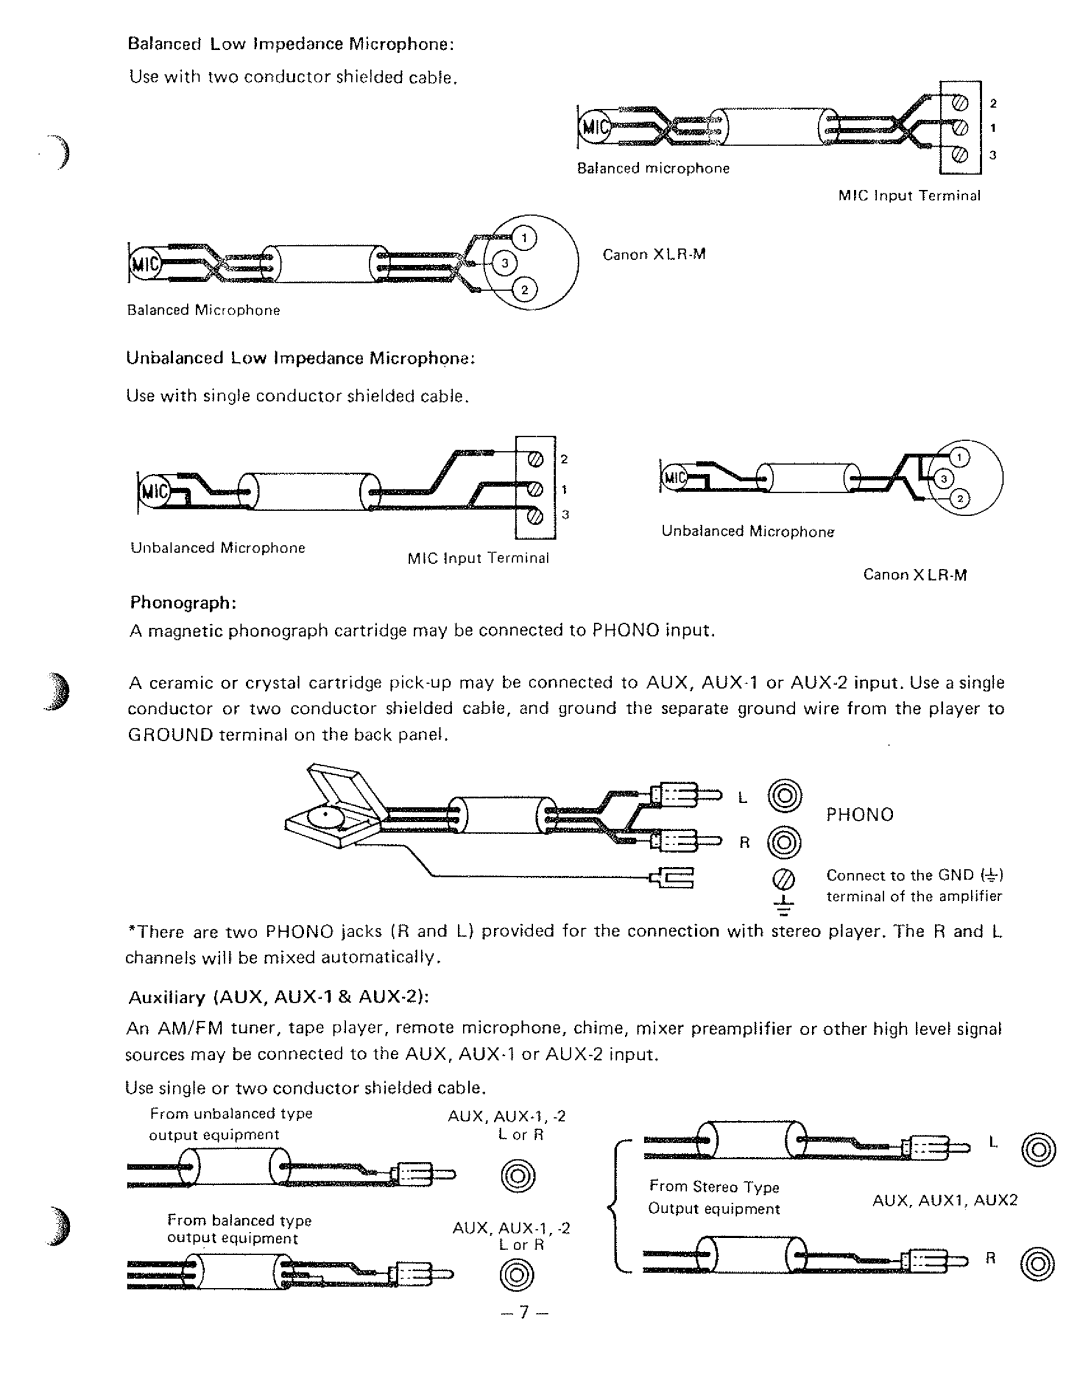 Aiphone BX-1200, BX-300, BX-600 manual 